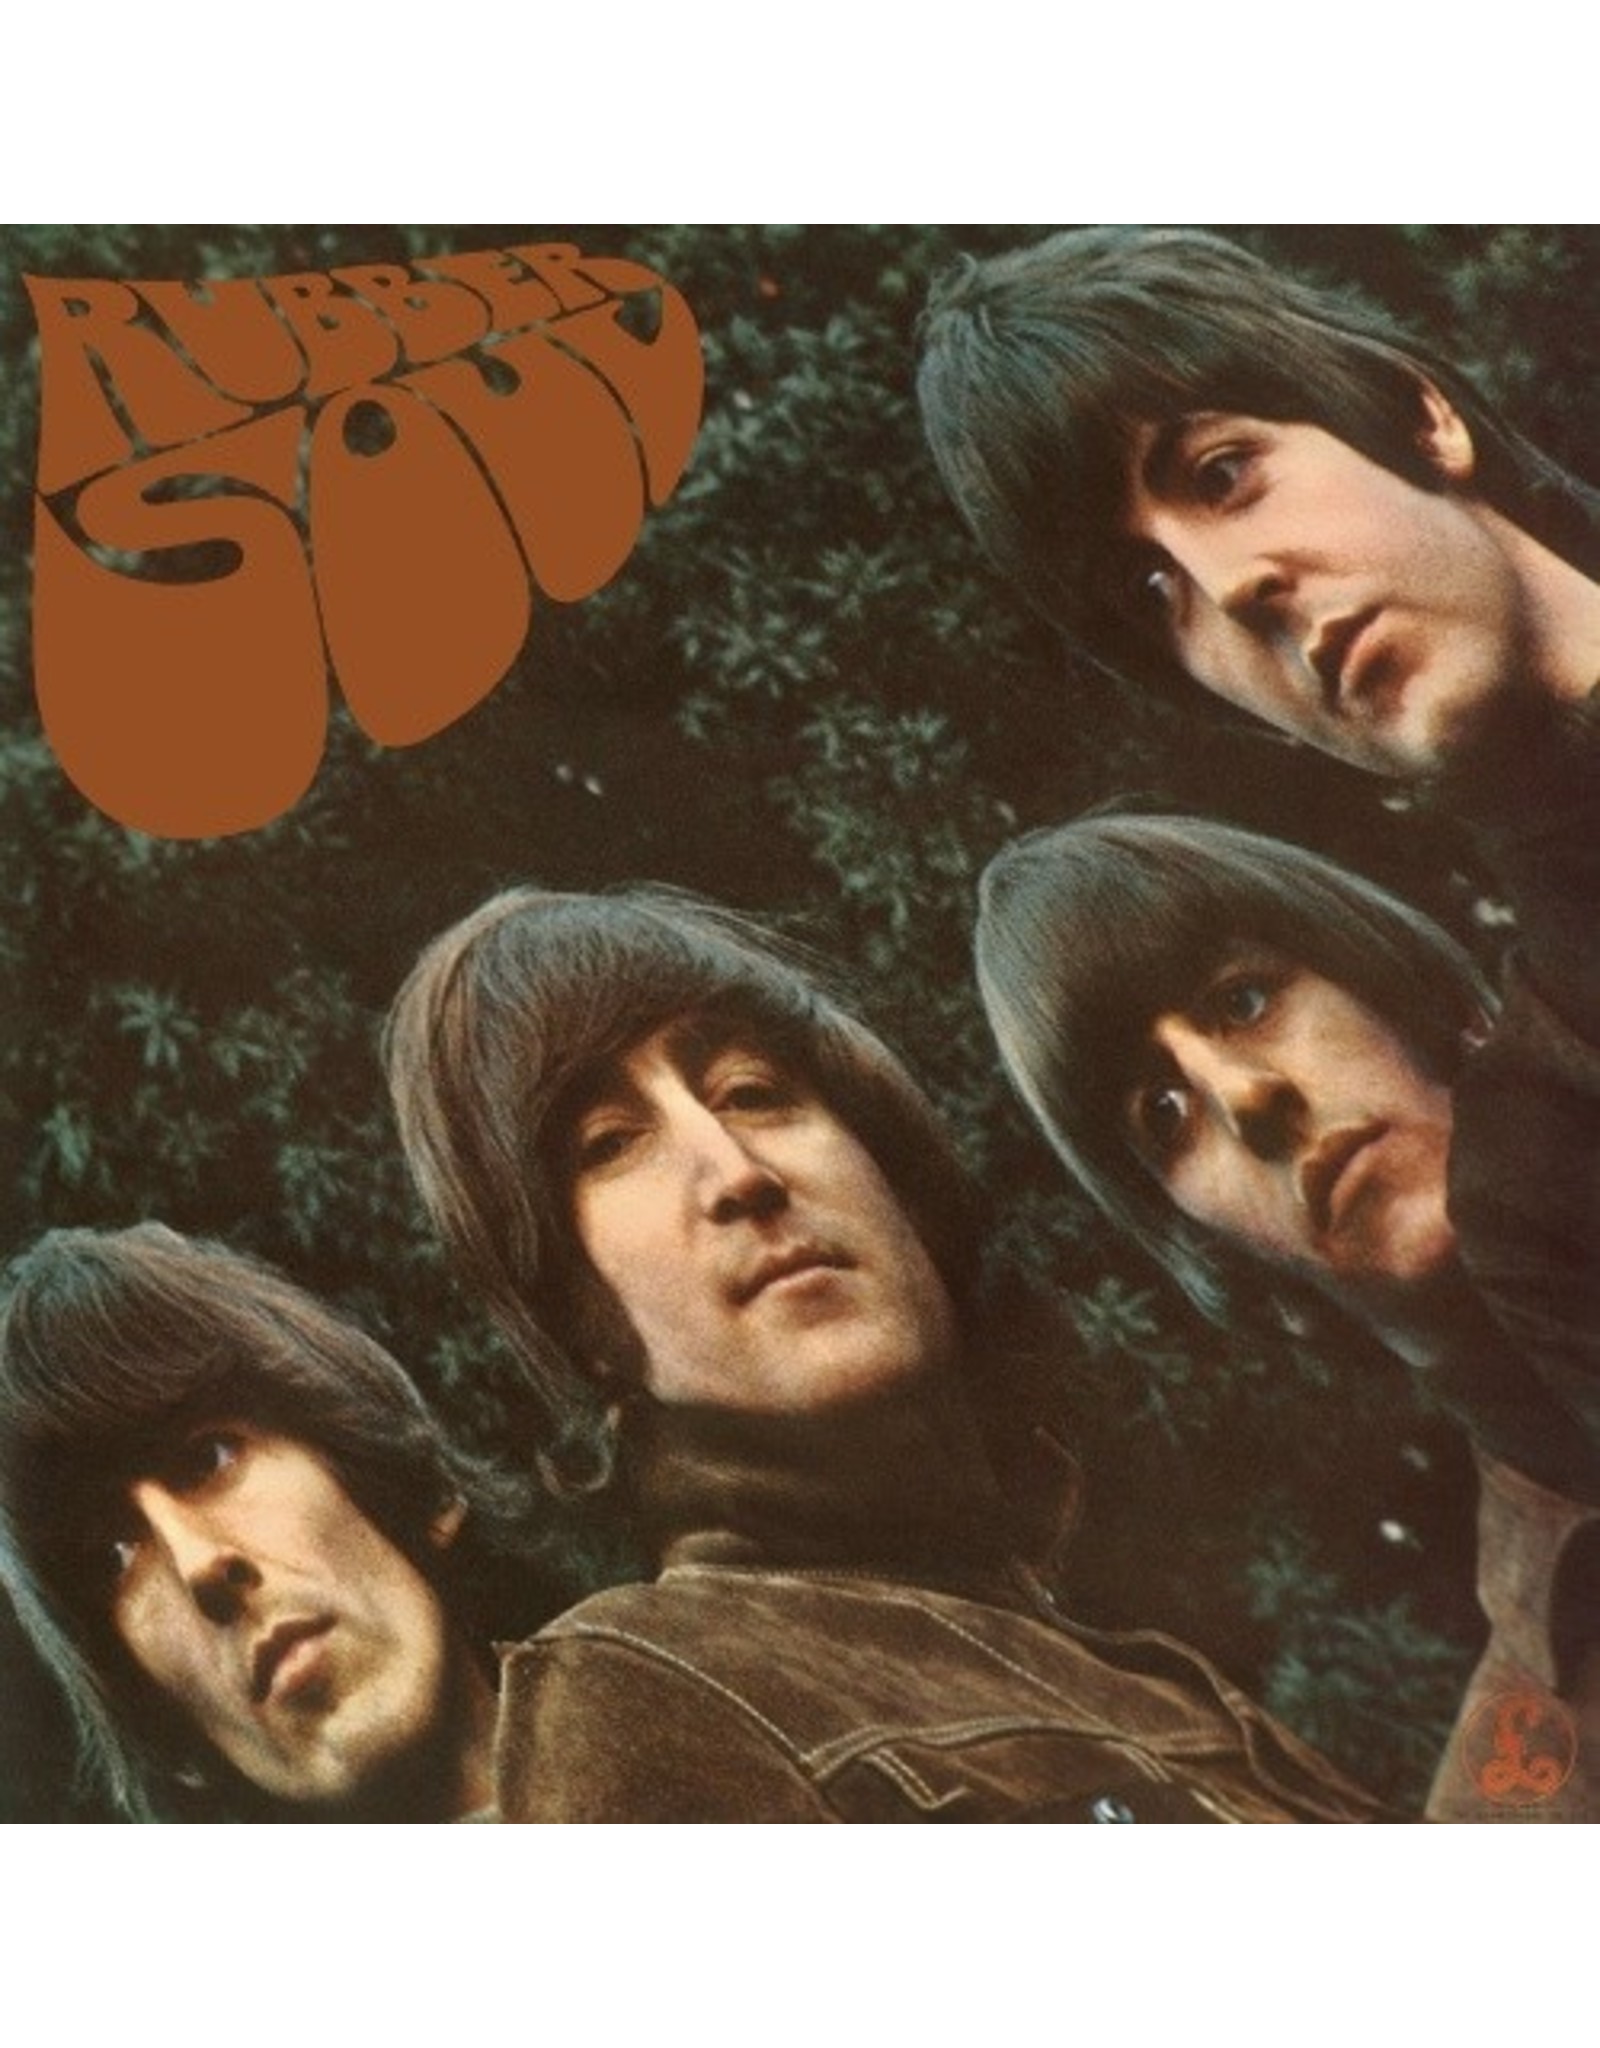 New Vinyl Beatles - Rubber Soul LP